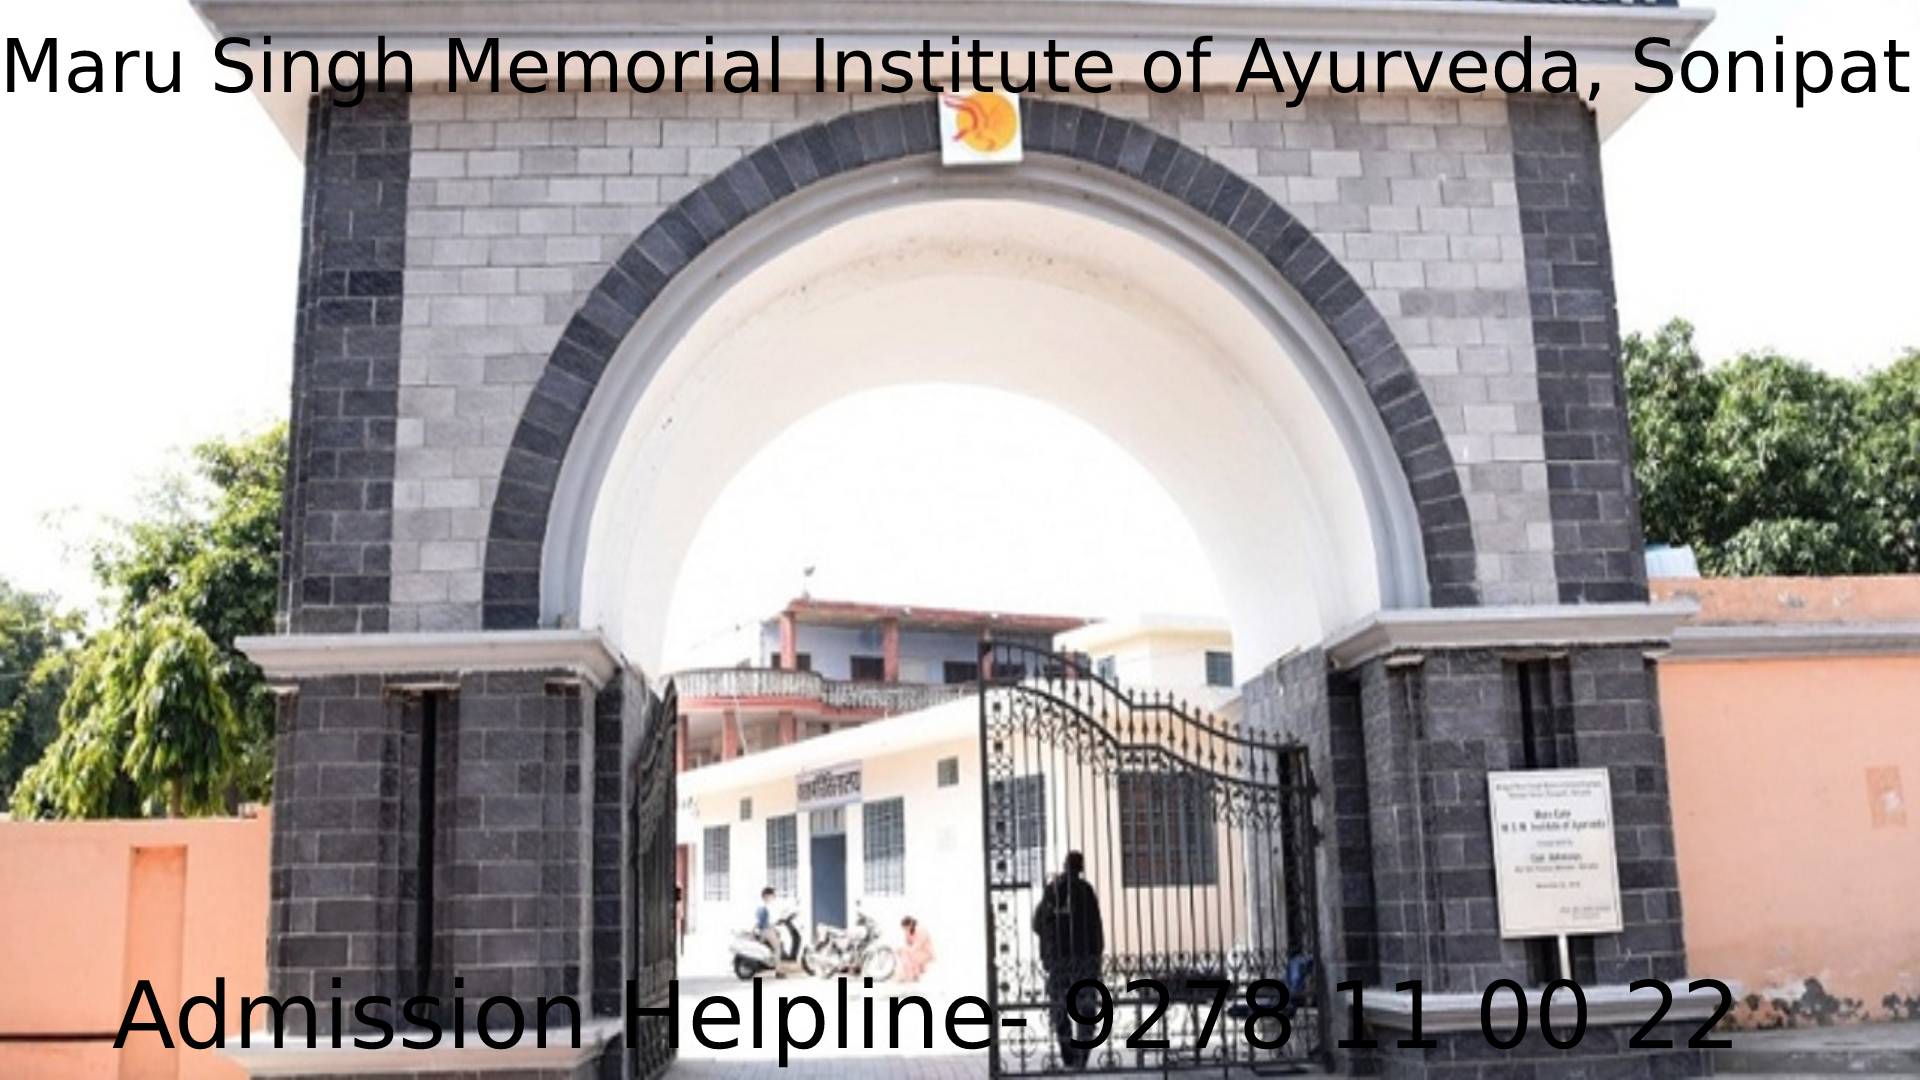 Maru Singh Memorial Institute of Ayurveda, Sonipat